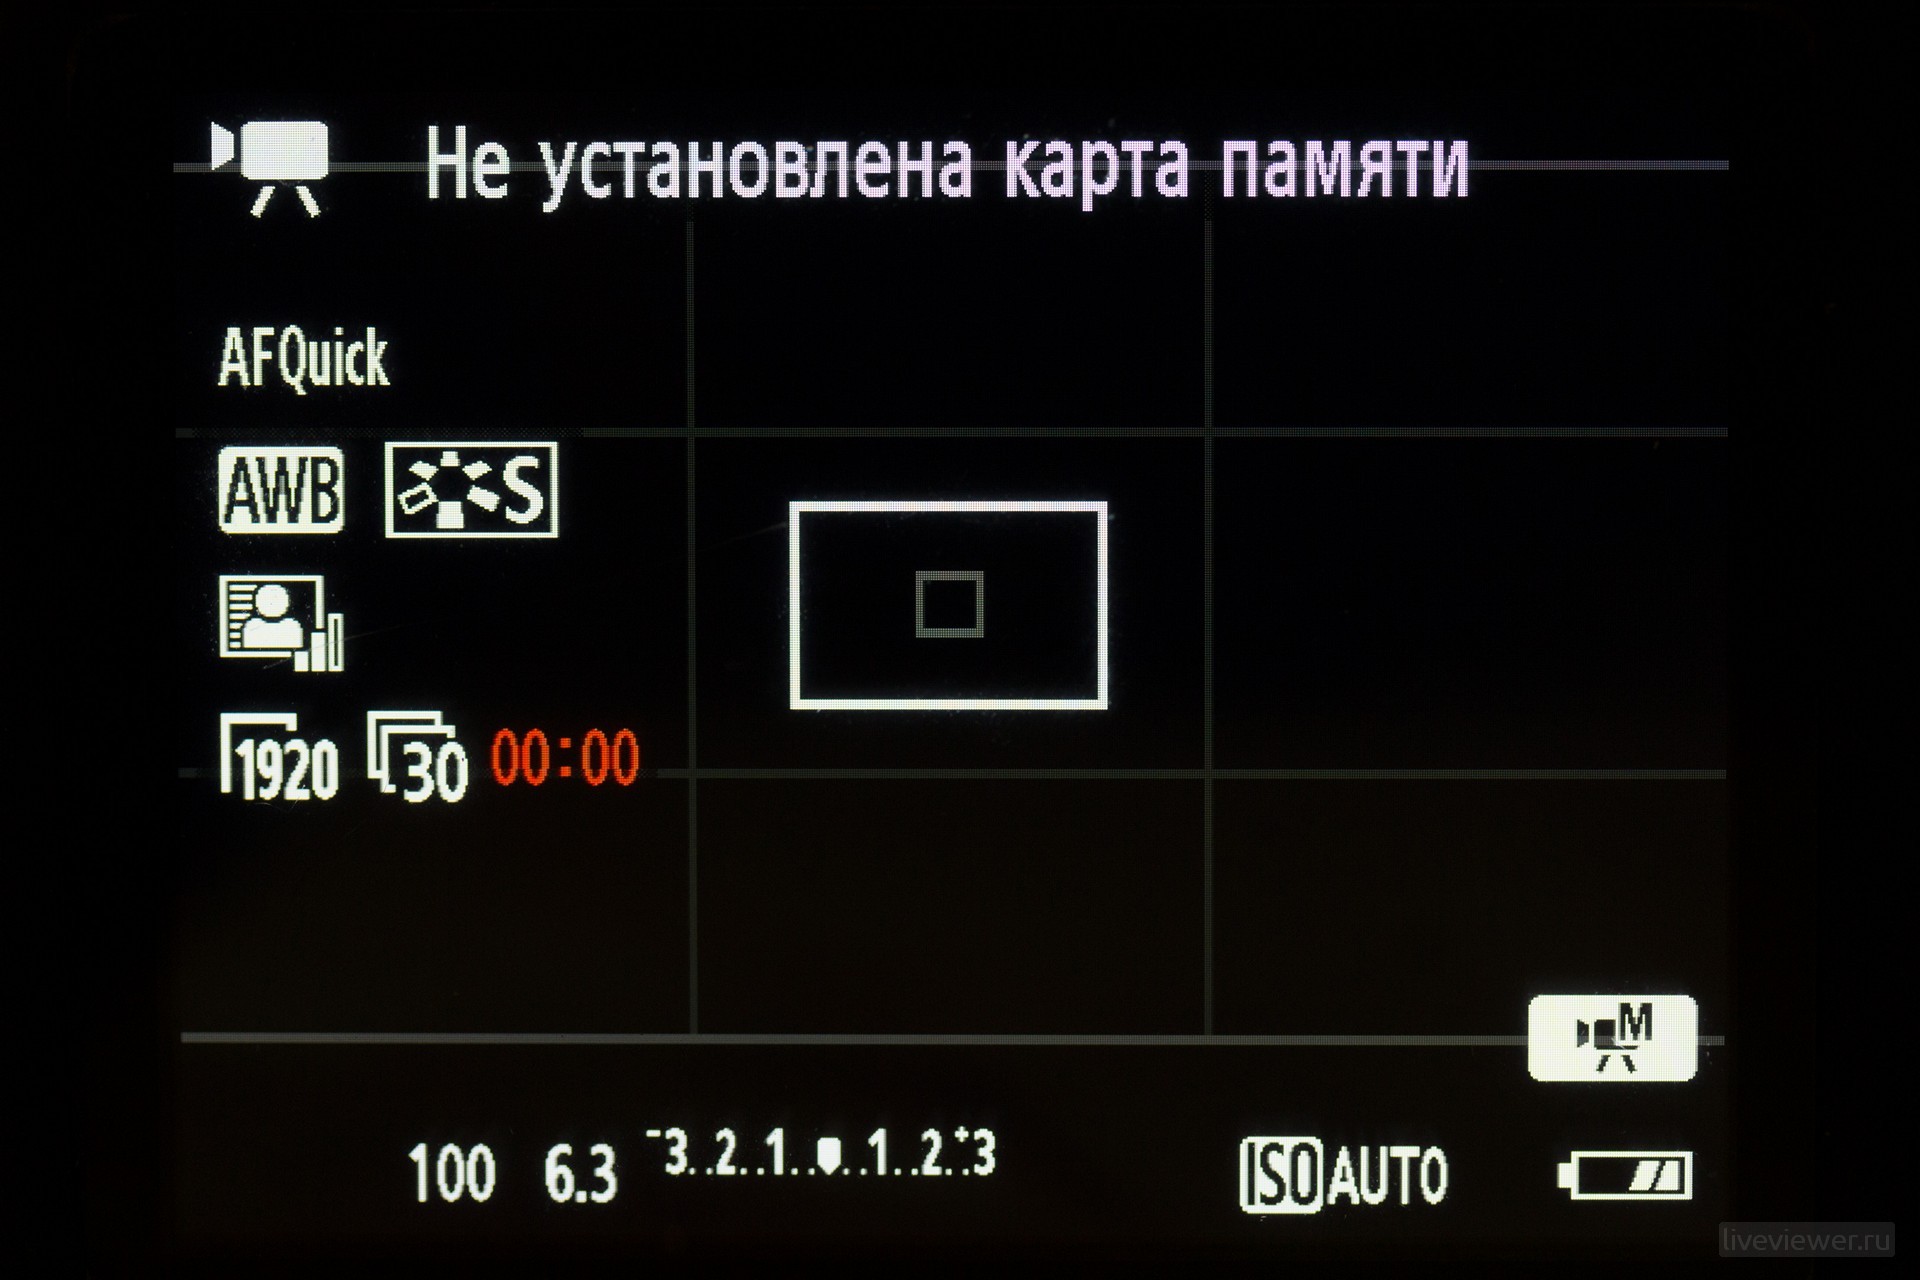 canon eos 1300d menu liveviewer.ru 13